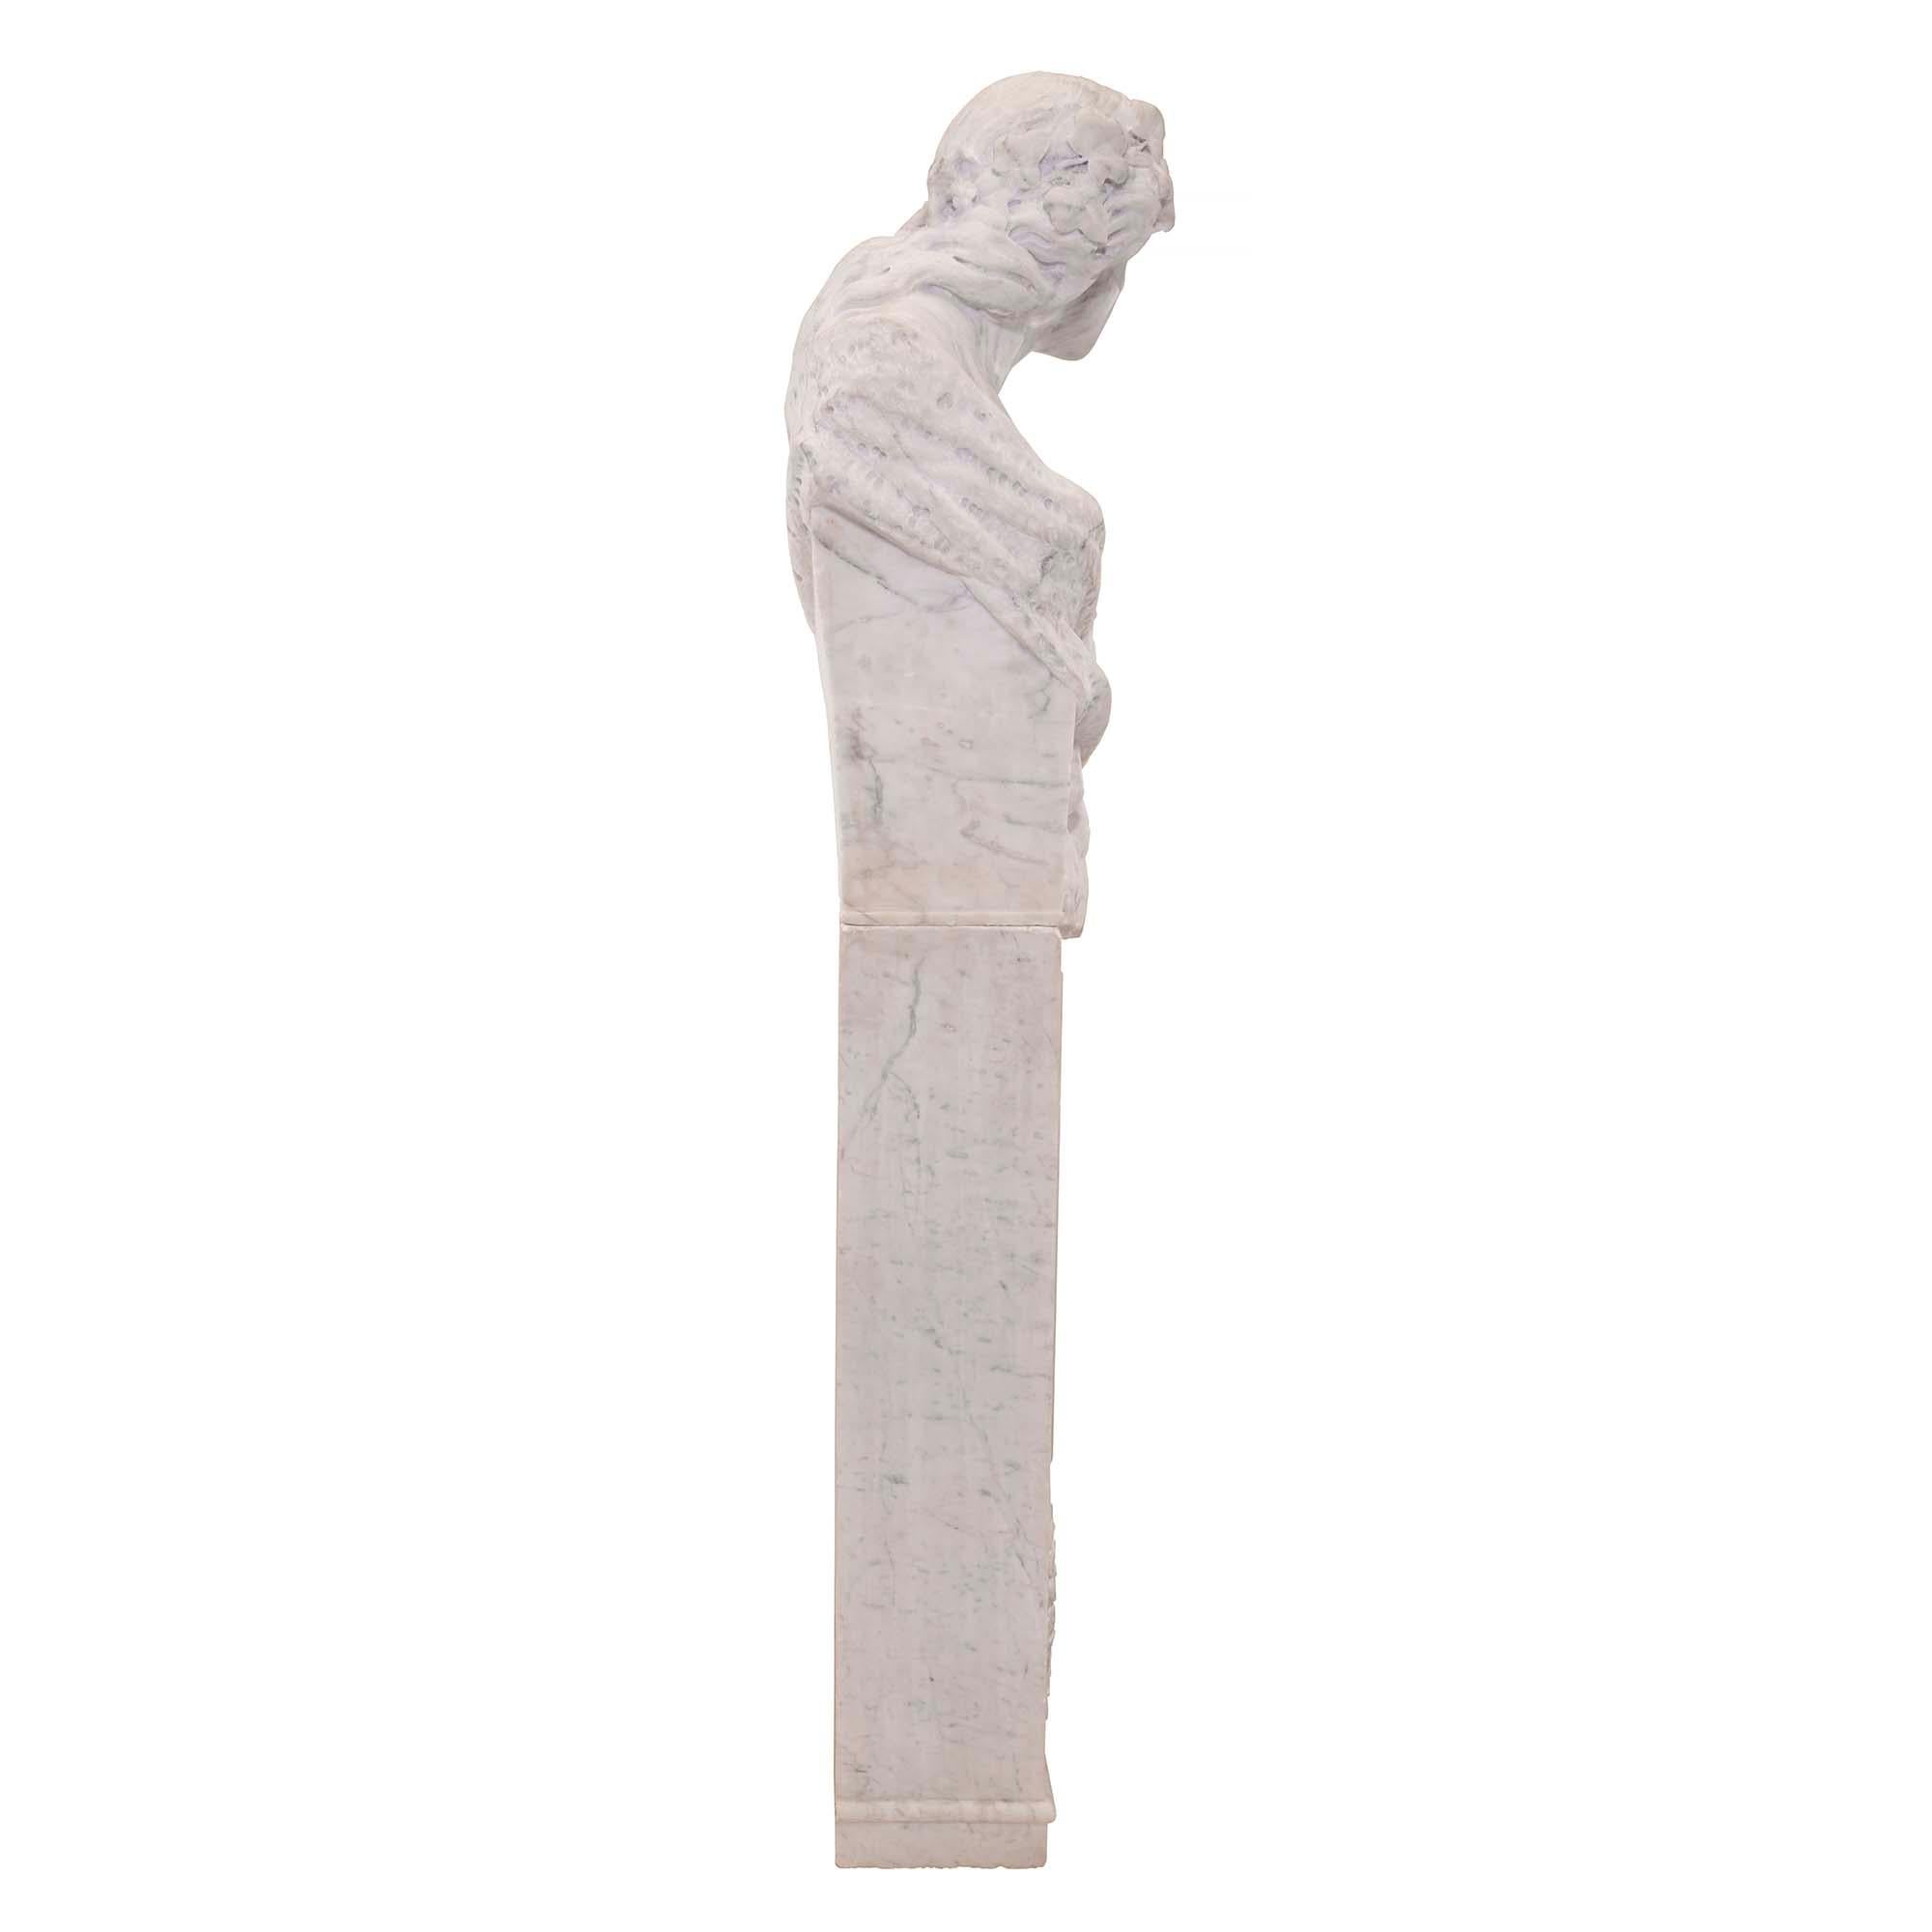 Eine sehr dekorative, freistehende Statue aus weißem Carrara-Marmor aus dem 19. Jahrhundert, die ein Gartenmädchen darstellt. Die Statue steht auf einem rechteckigen Marmorsockel mit einem reich geschnitzten Blumenkranz und einer gebundenen Schleife